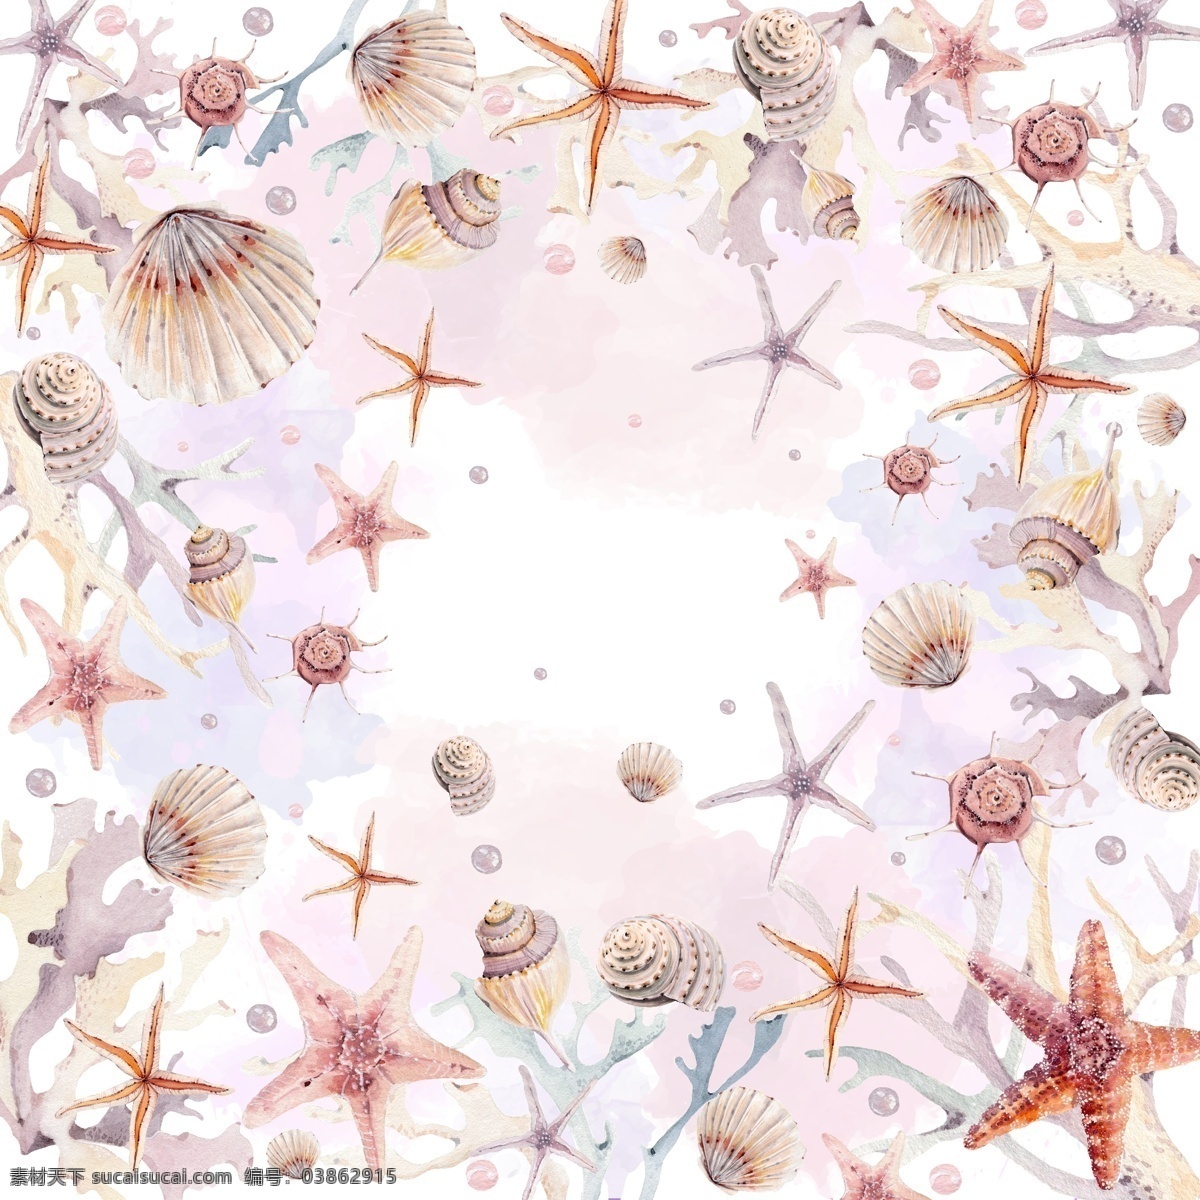 贝壳 海鲜 海星 海滩 沙滩 陀螺壳 生物世界 海洋生物